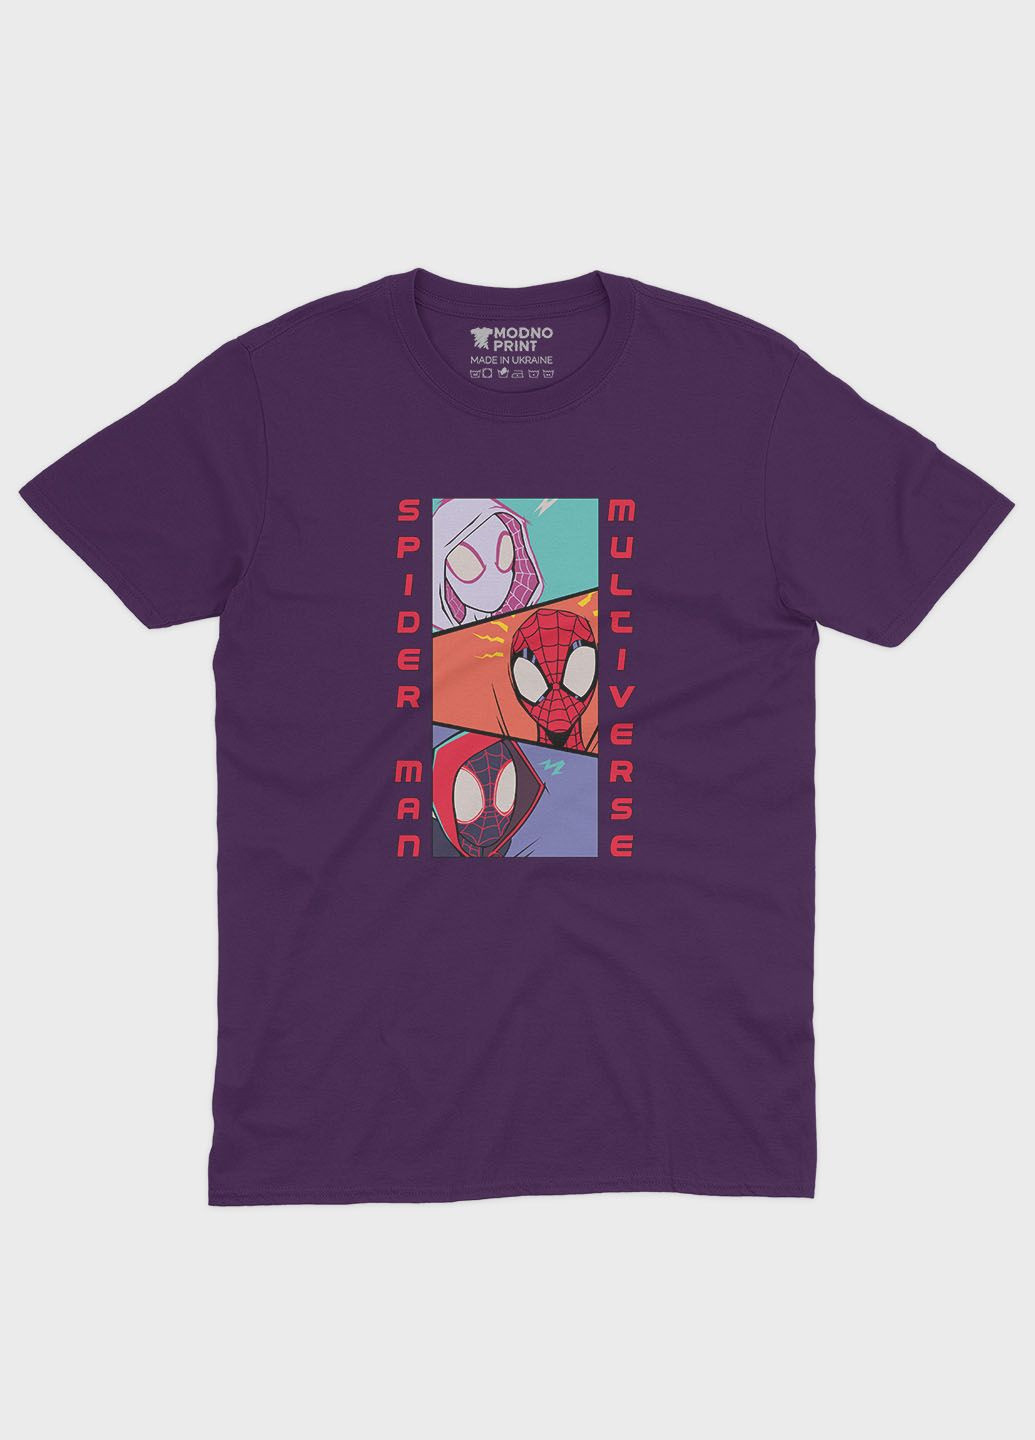 Фіолетова демісезонна футболка для дівчинки з принтом супергероя - людина-павук (ts001-1-dby-006-014-047-g) Modno